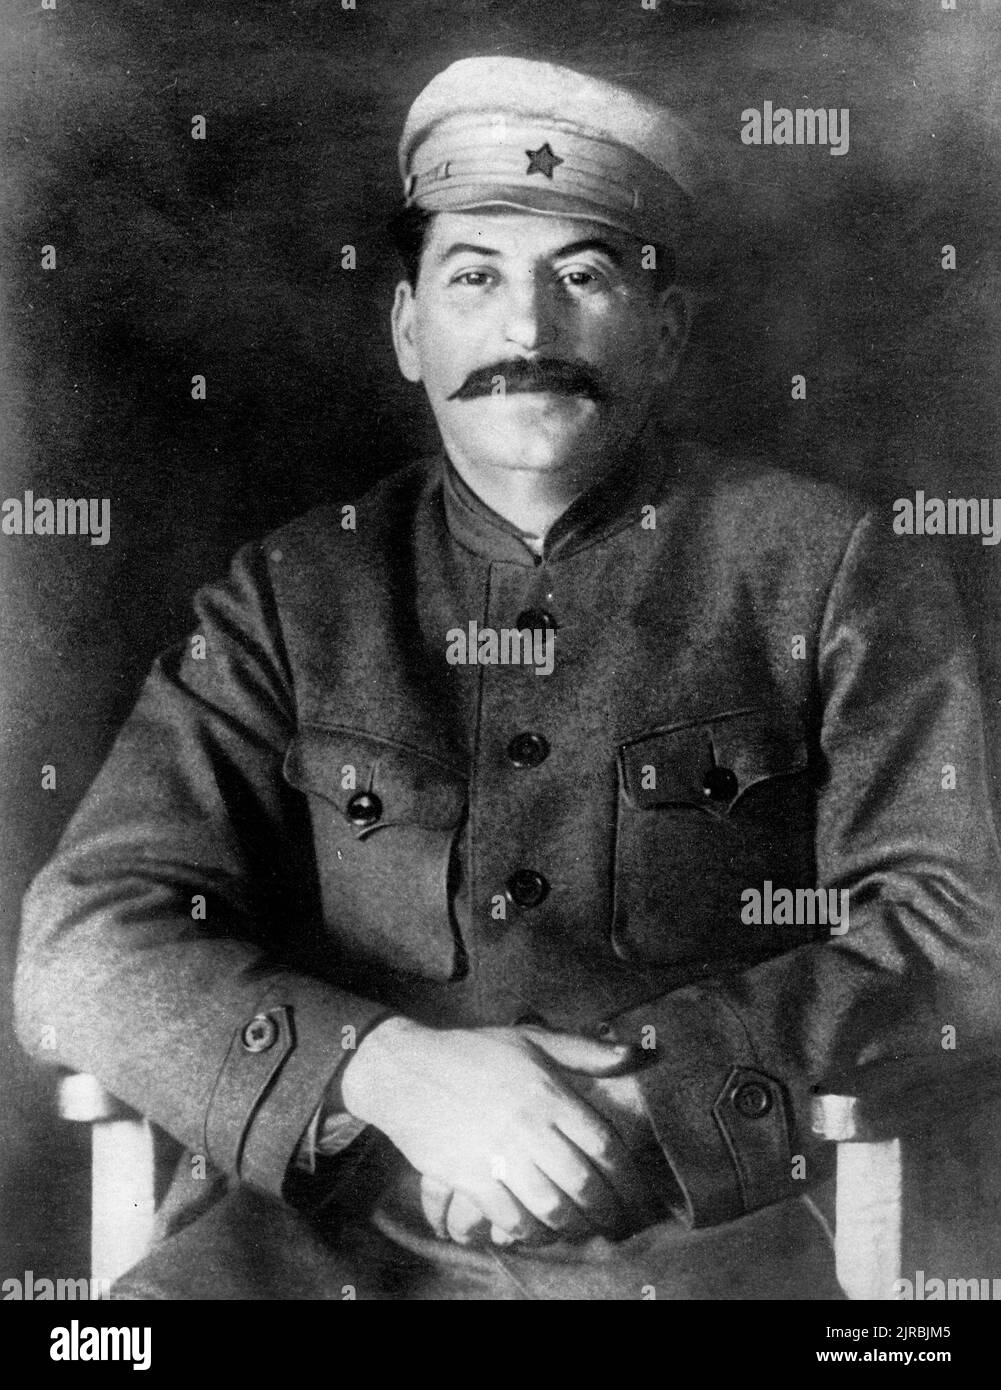 Una fotografía de Stalin, según información publicada en la revista Kommunist, tomada en 1920. Foto de stock